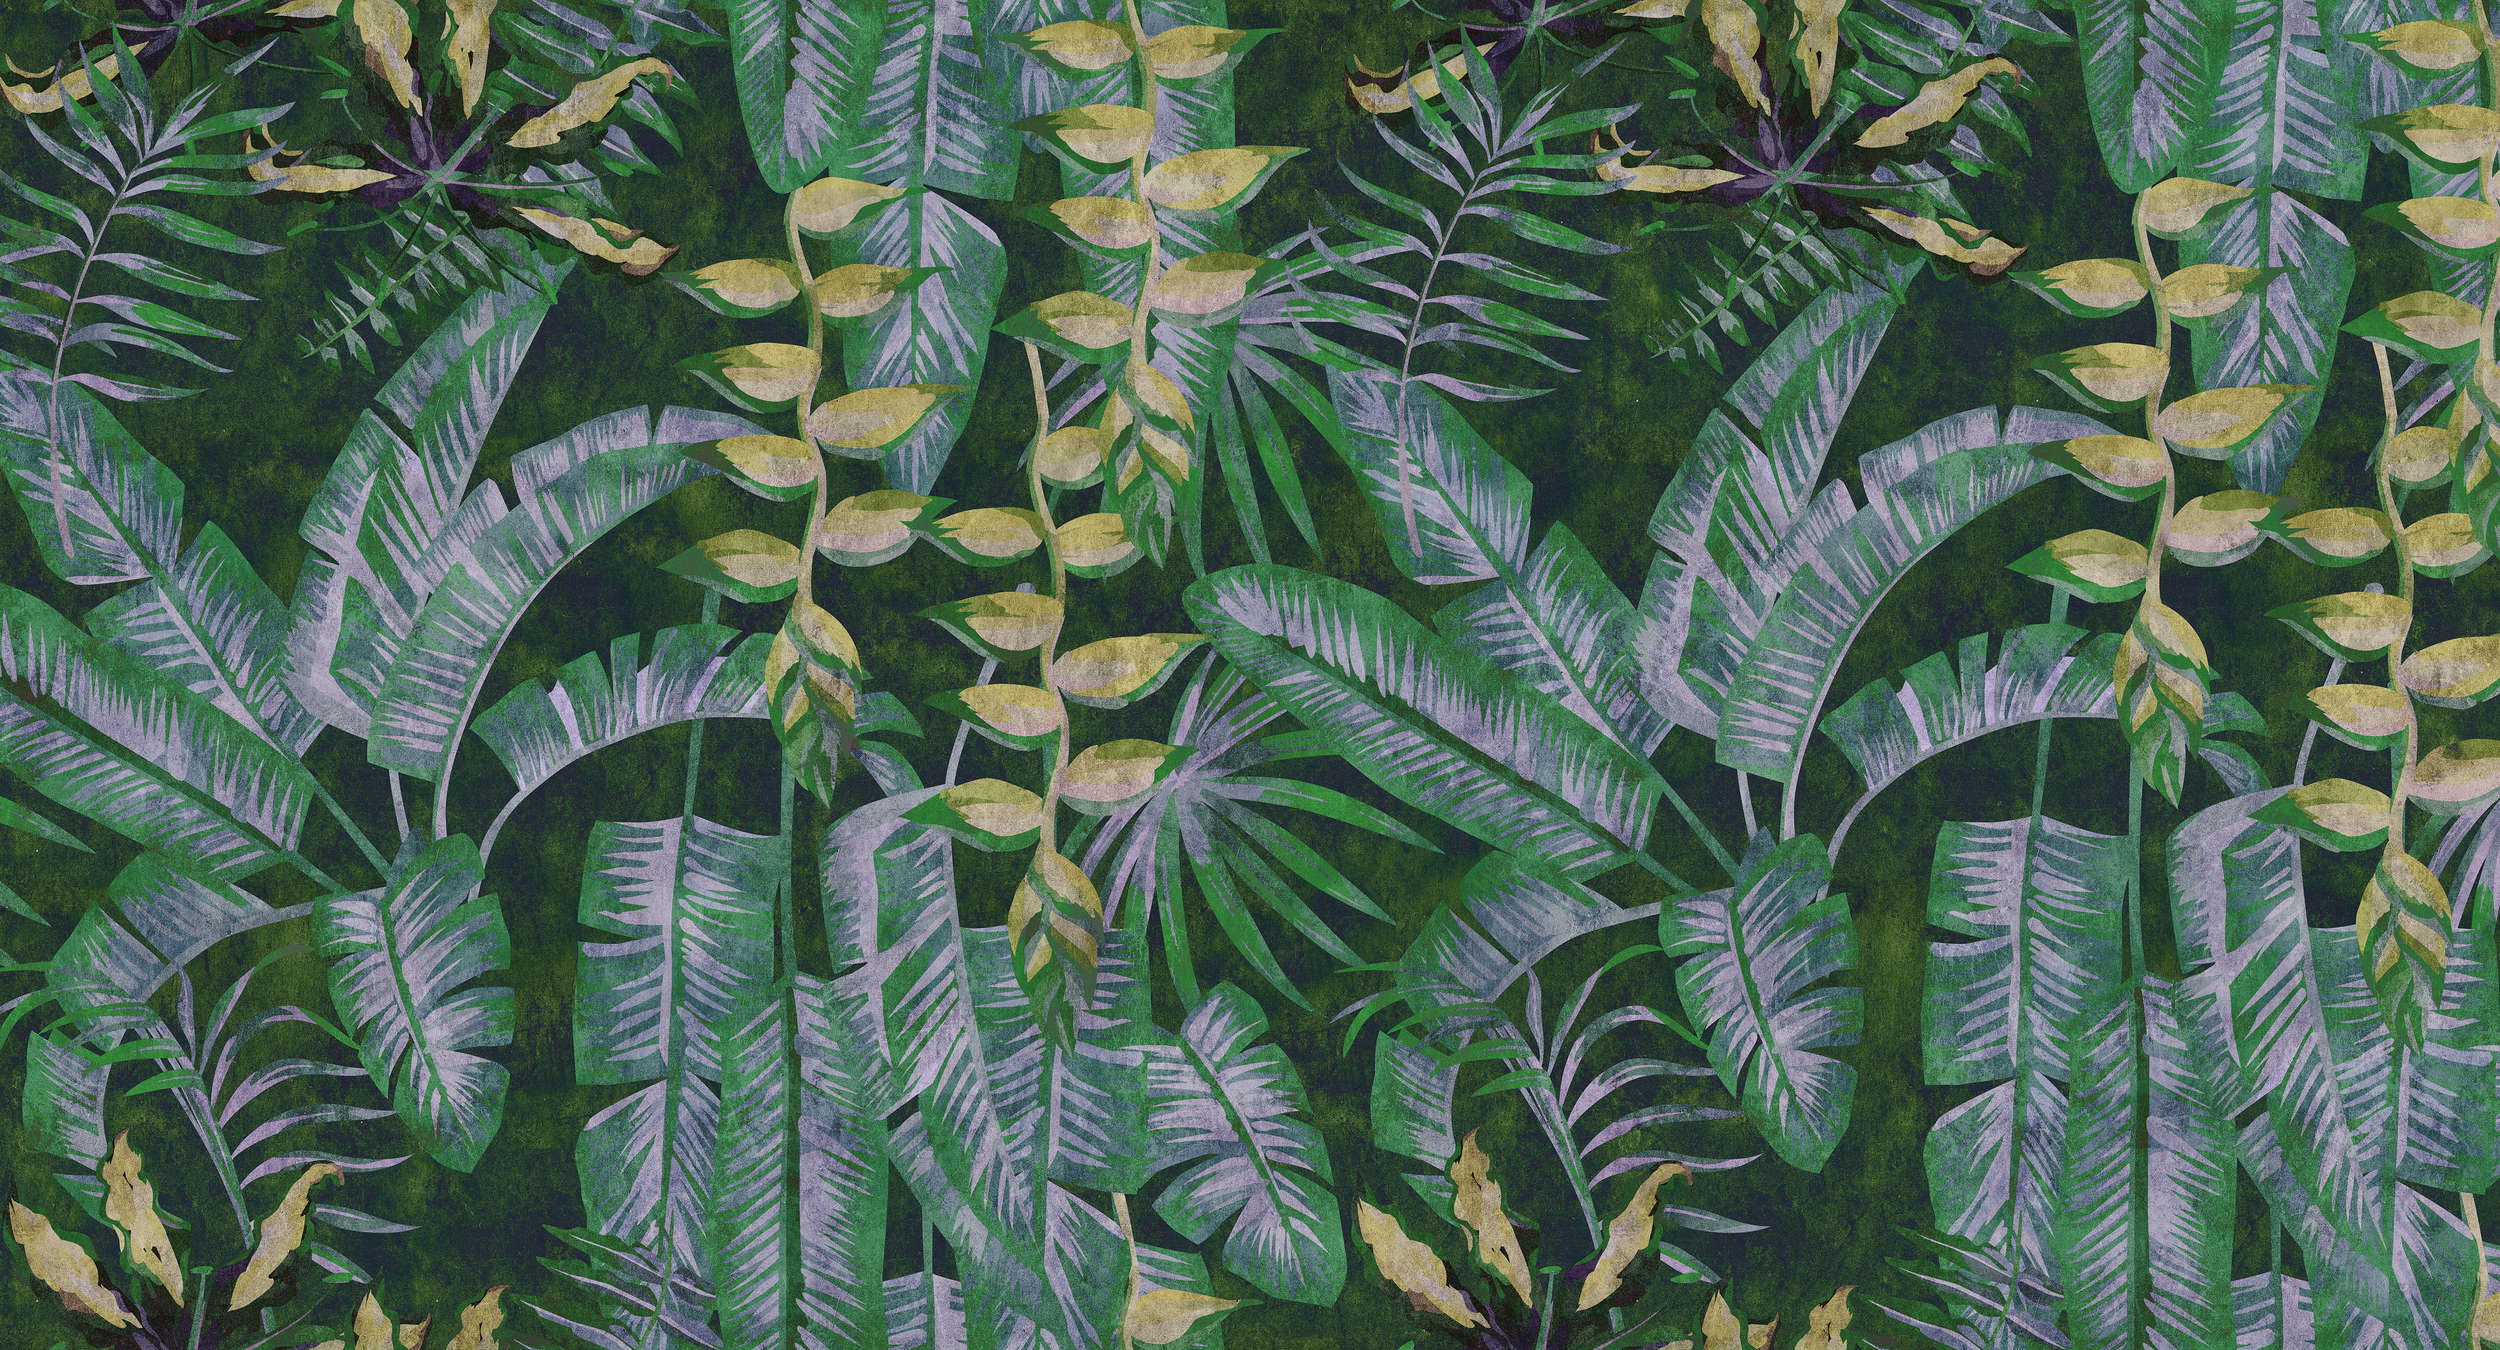             Tropicana 2 - papel pintado con impresión digital de plantas tropicales en estructura de papel secante - amarillo, verde | nácar liso
        